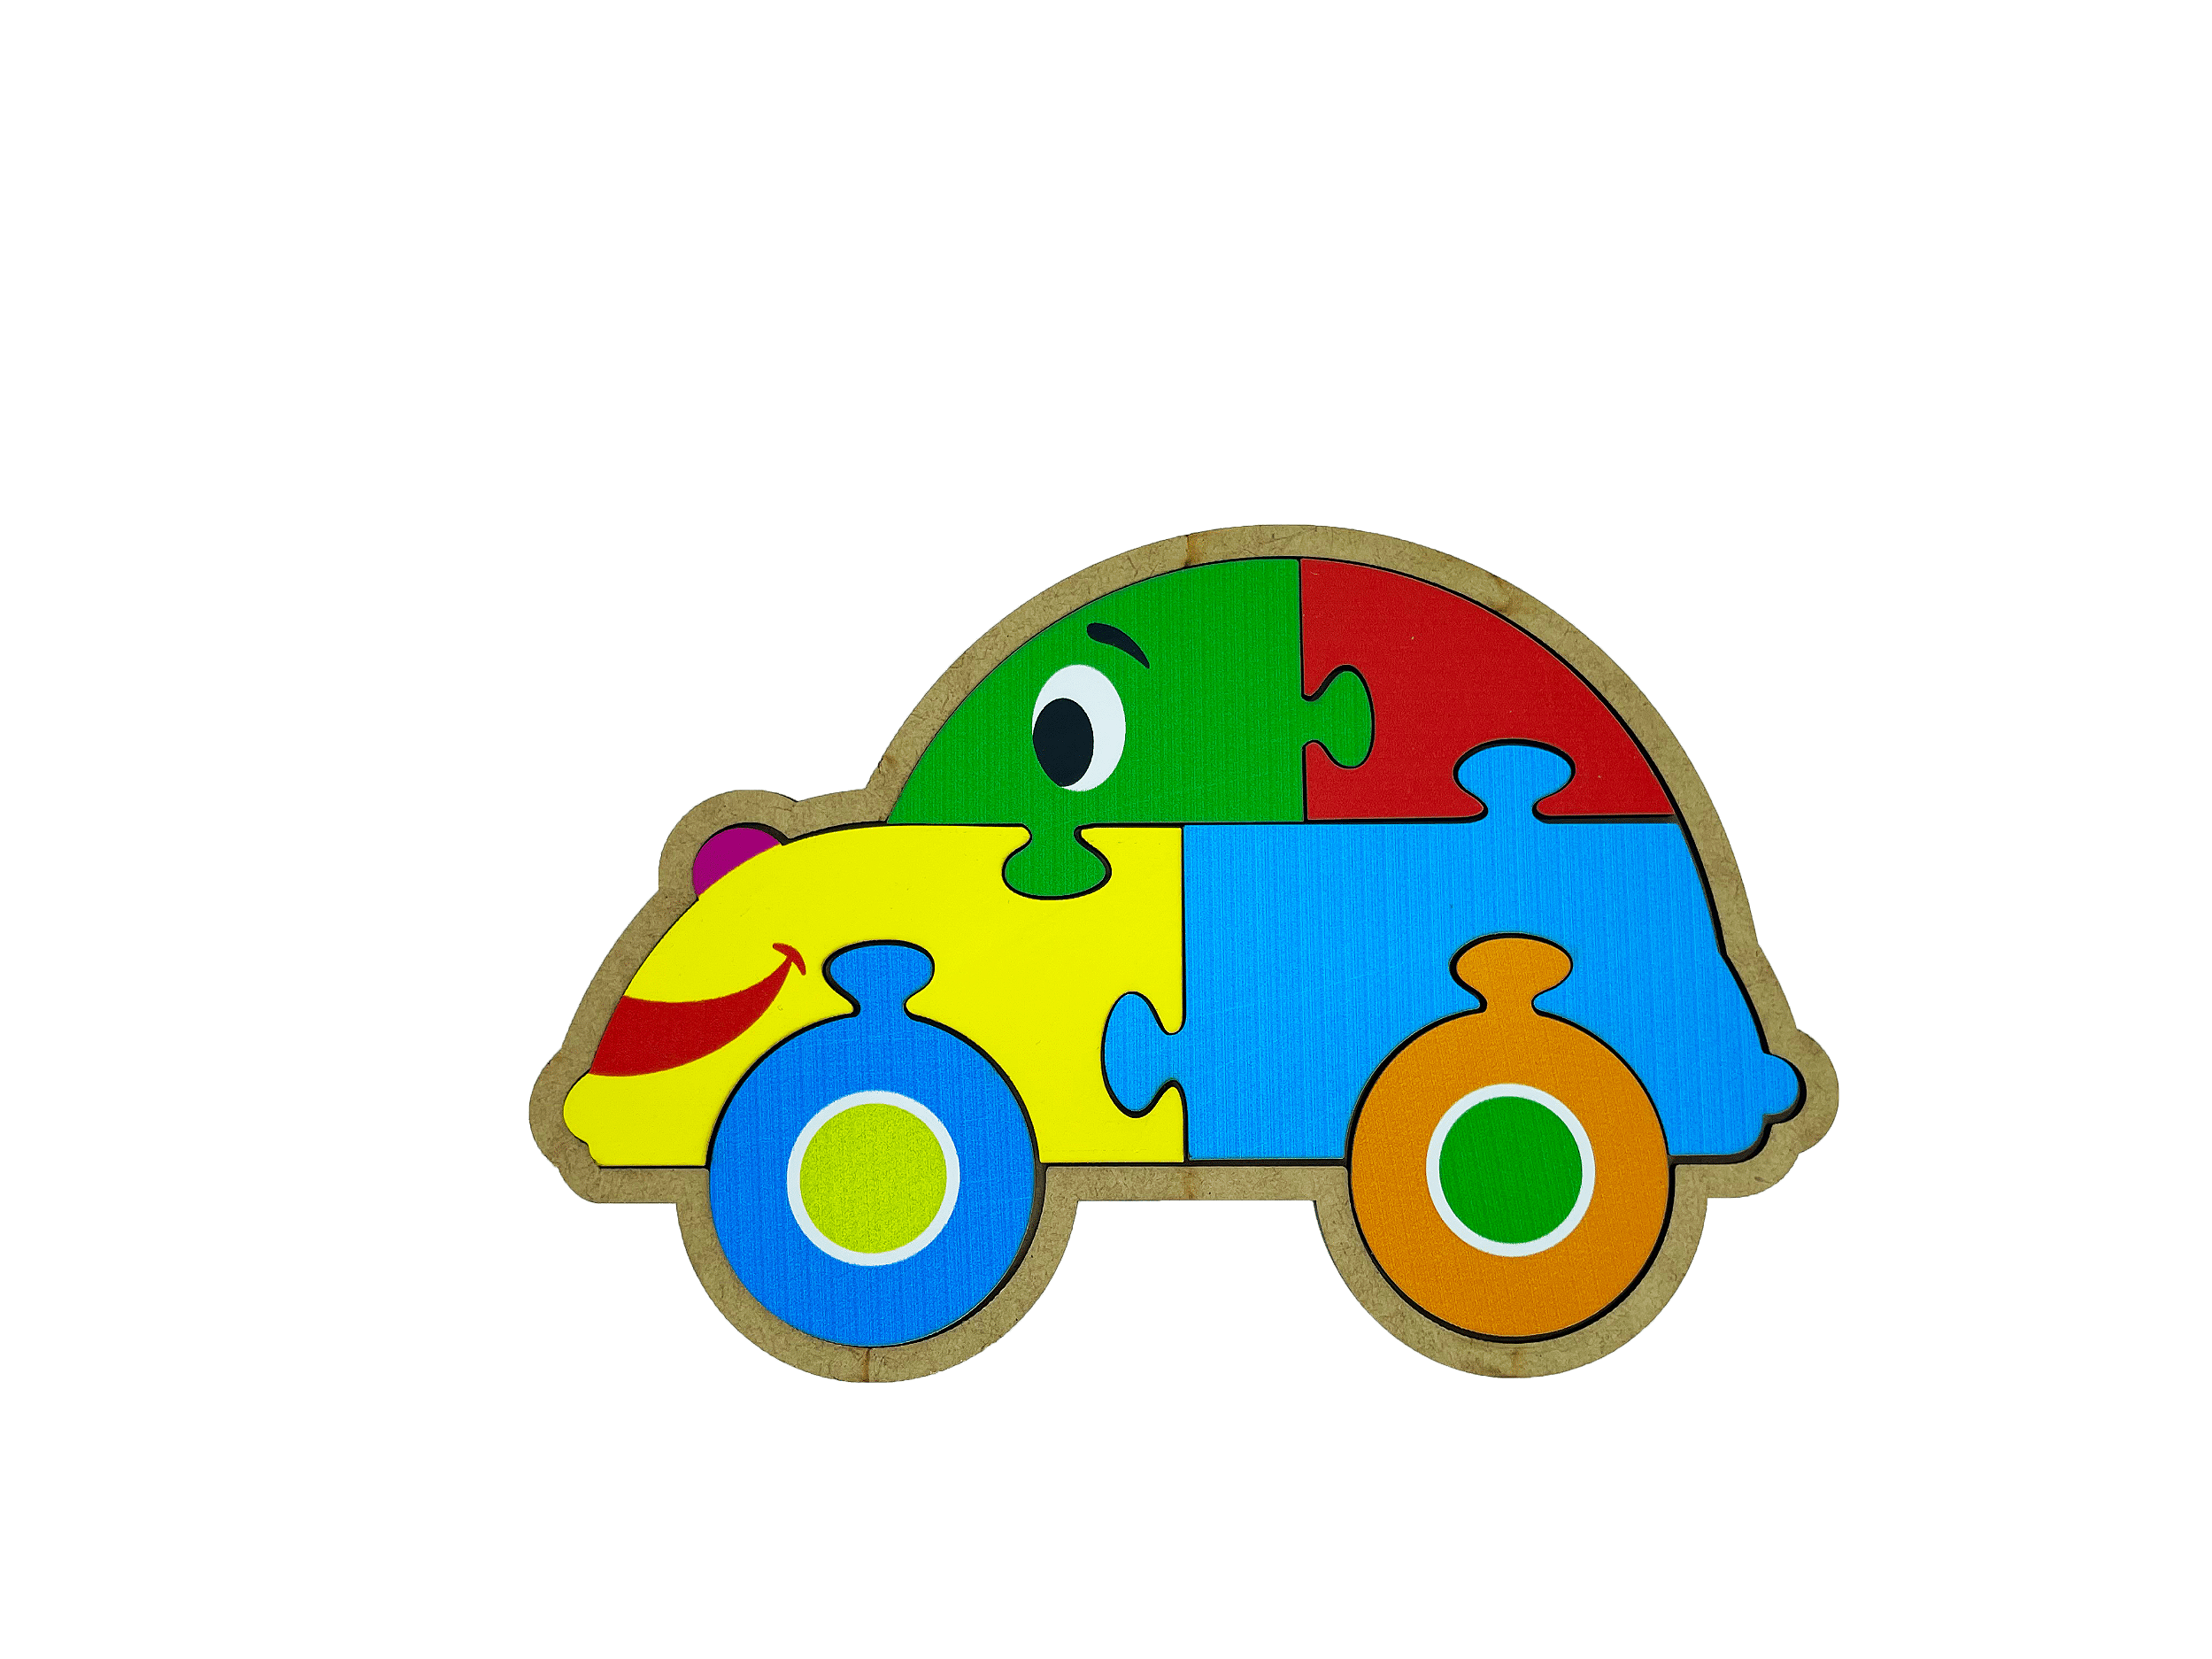 Brinquedo Educativo Quebra-cabeça Infantil - Carro